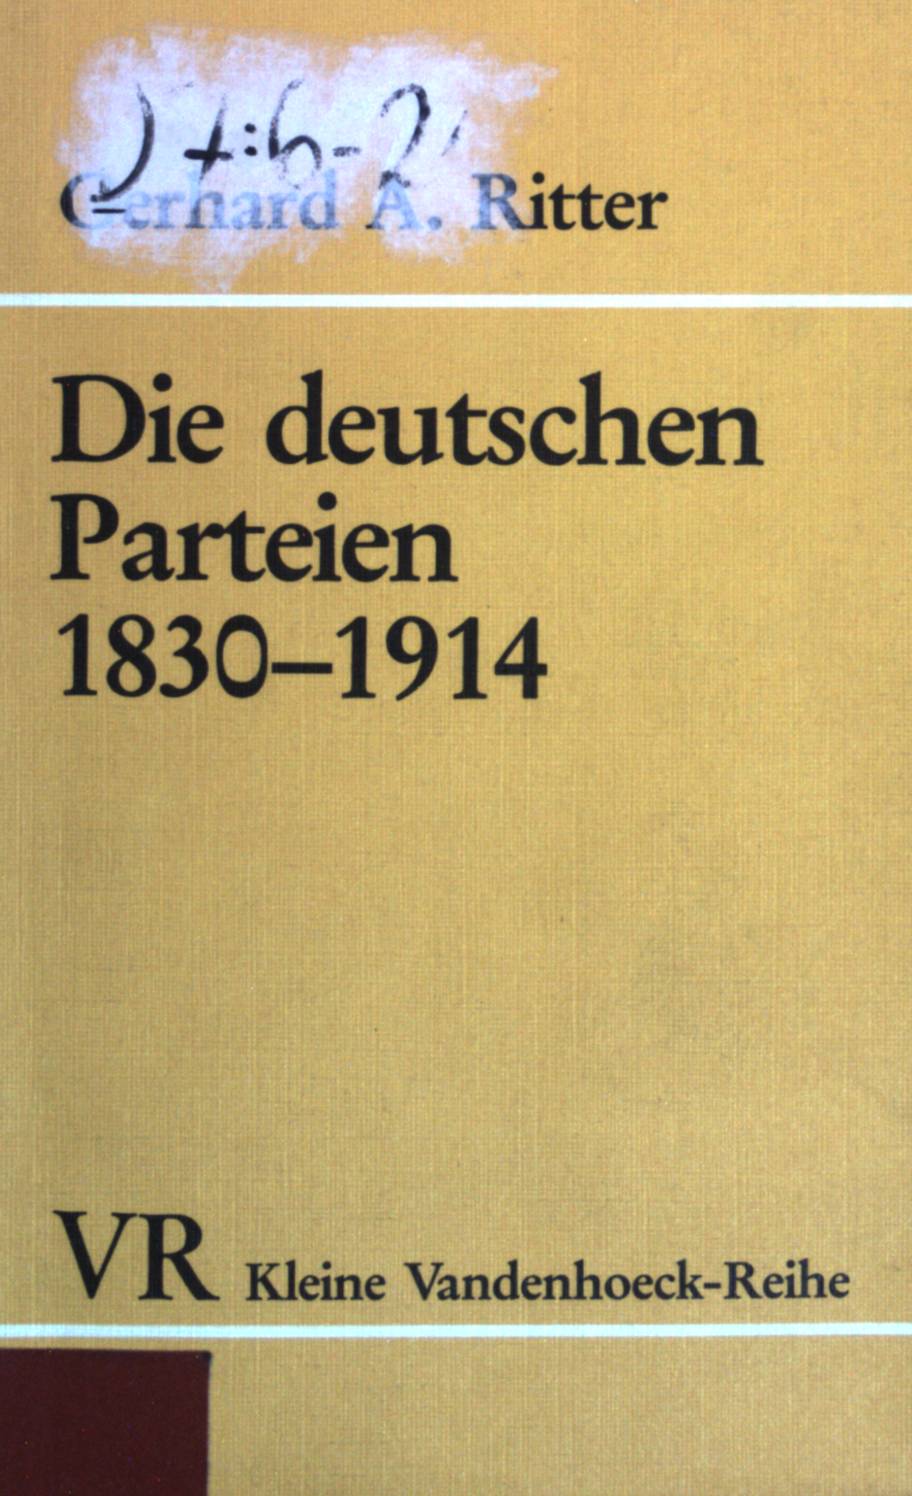 Die deutschen Parteien 1830-1914: Parteien und Gesellschaft im konstitutionellen Regierungssystem